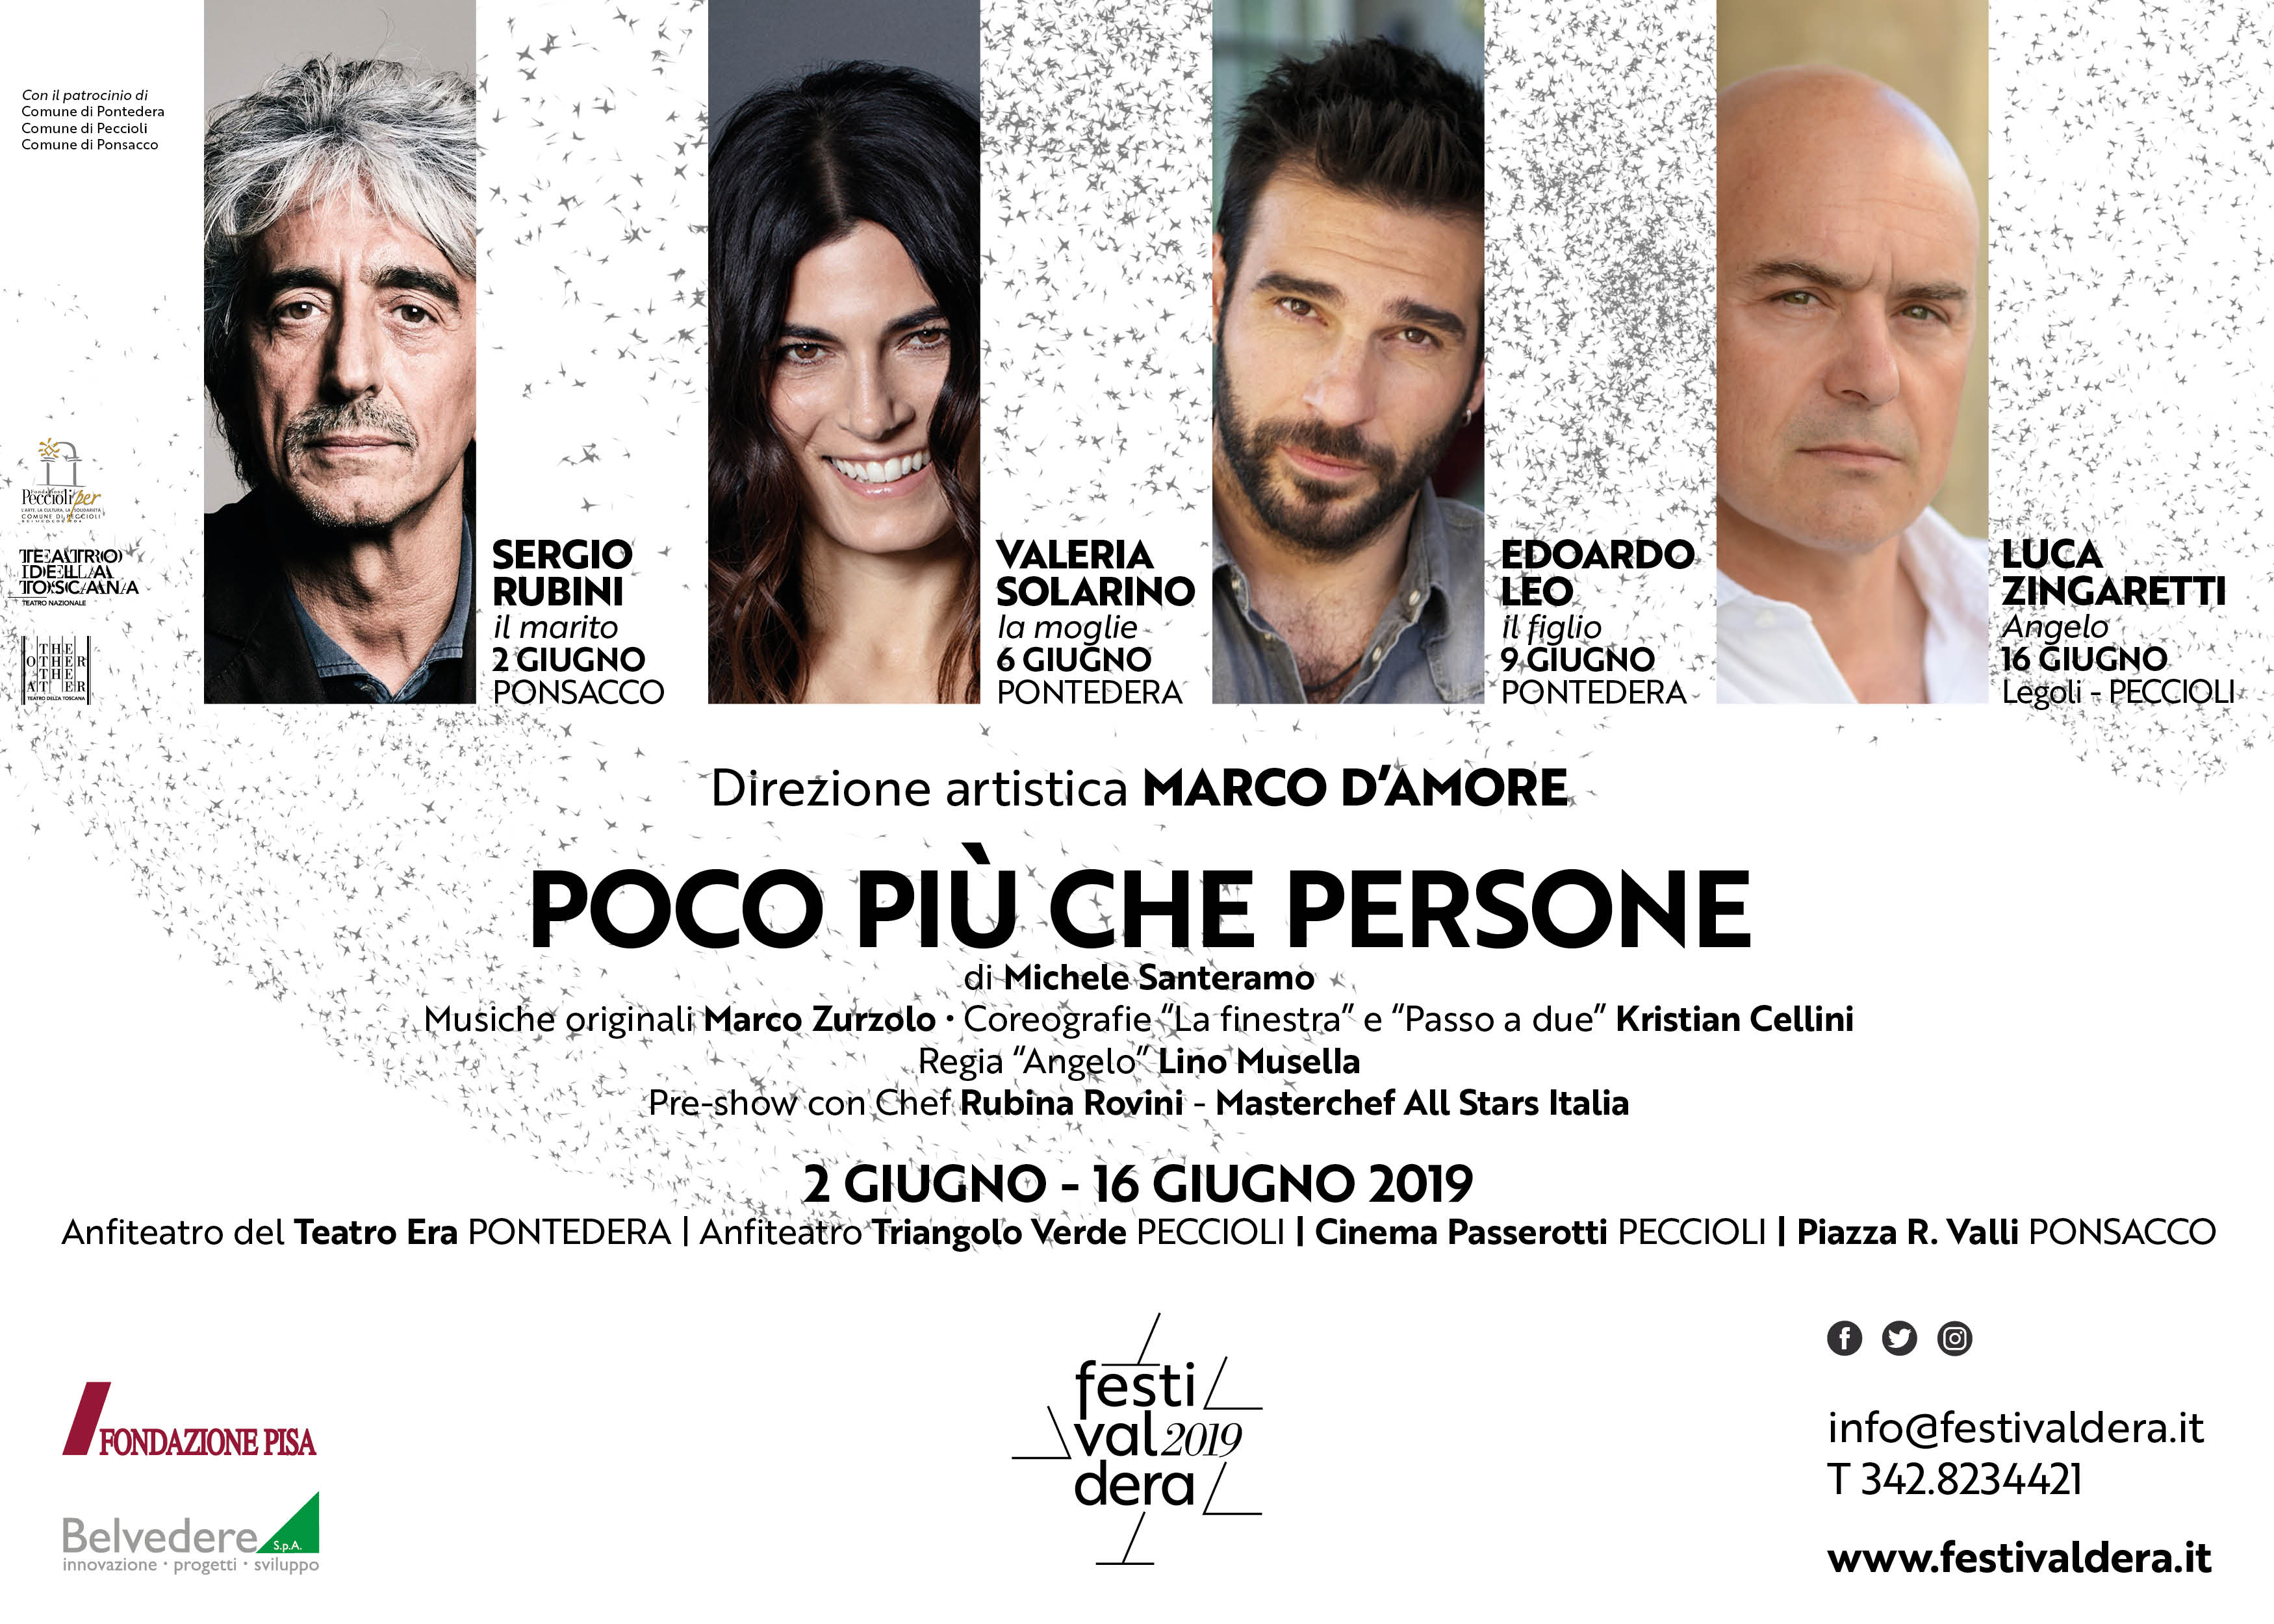 Solarino, Rubini, Leo e Zingaretti al Festivaldera 2019